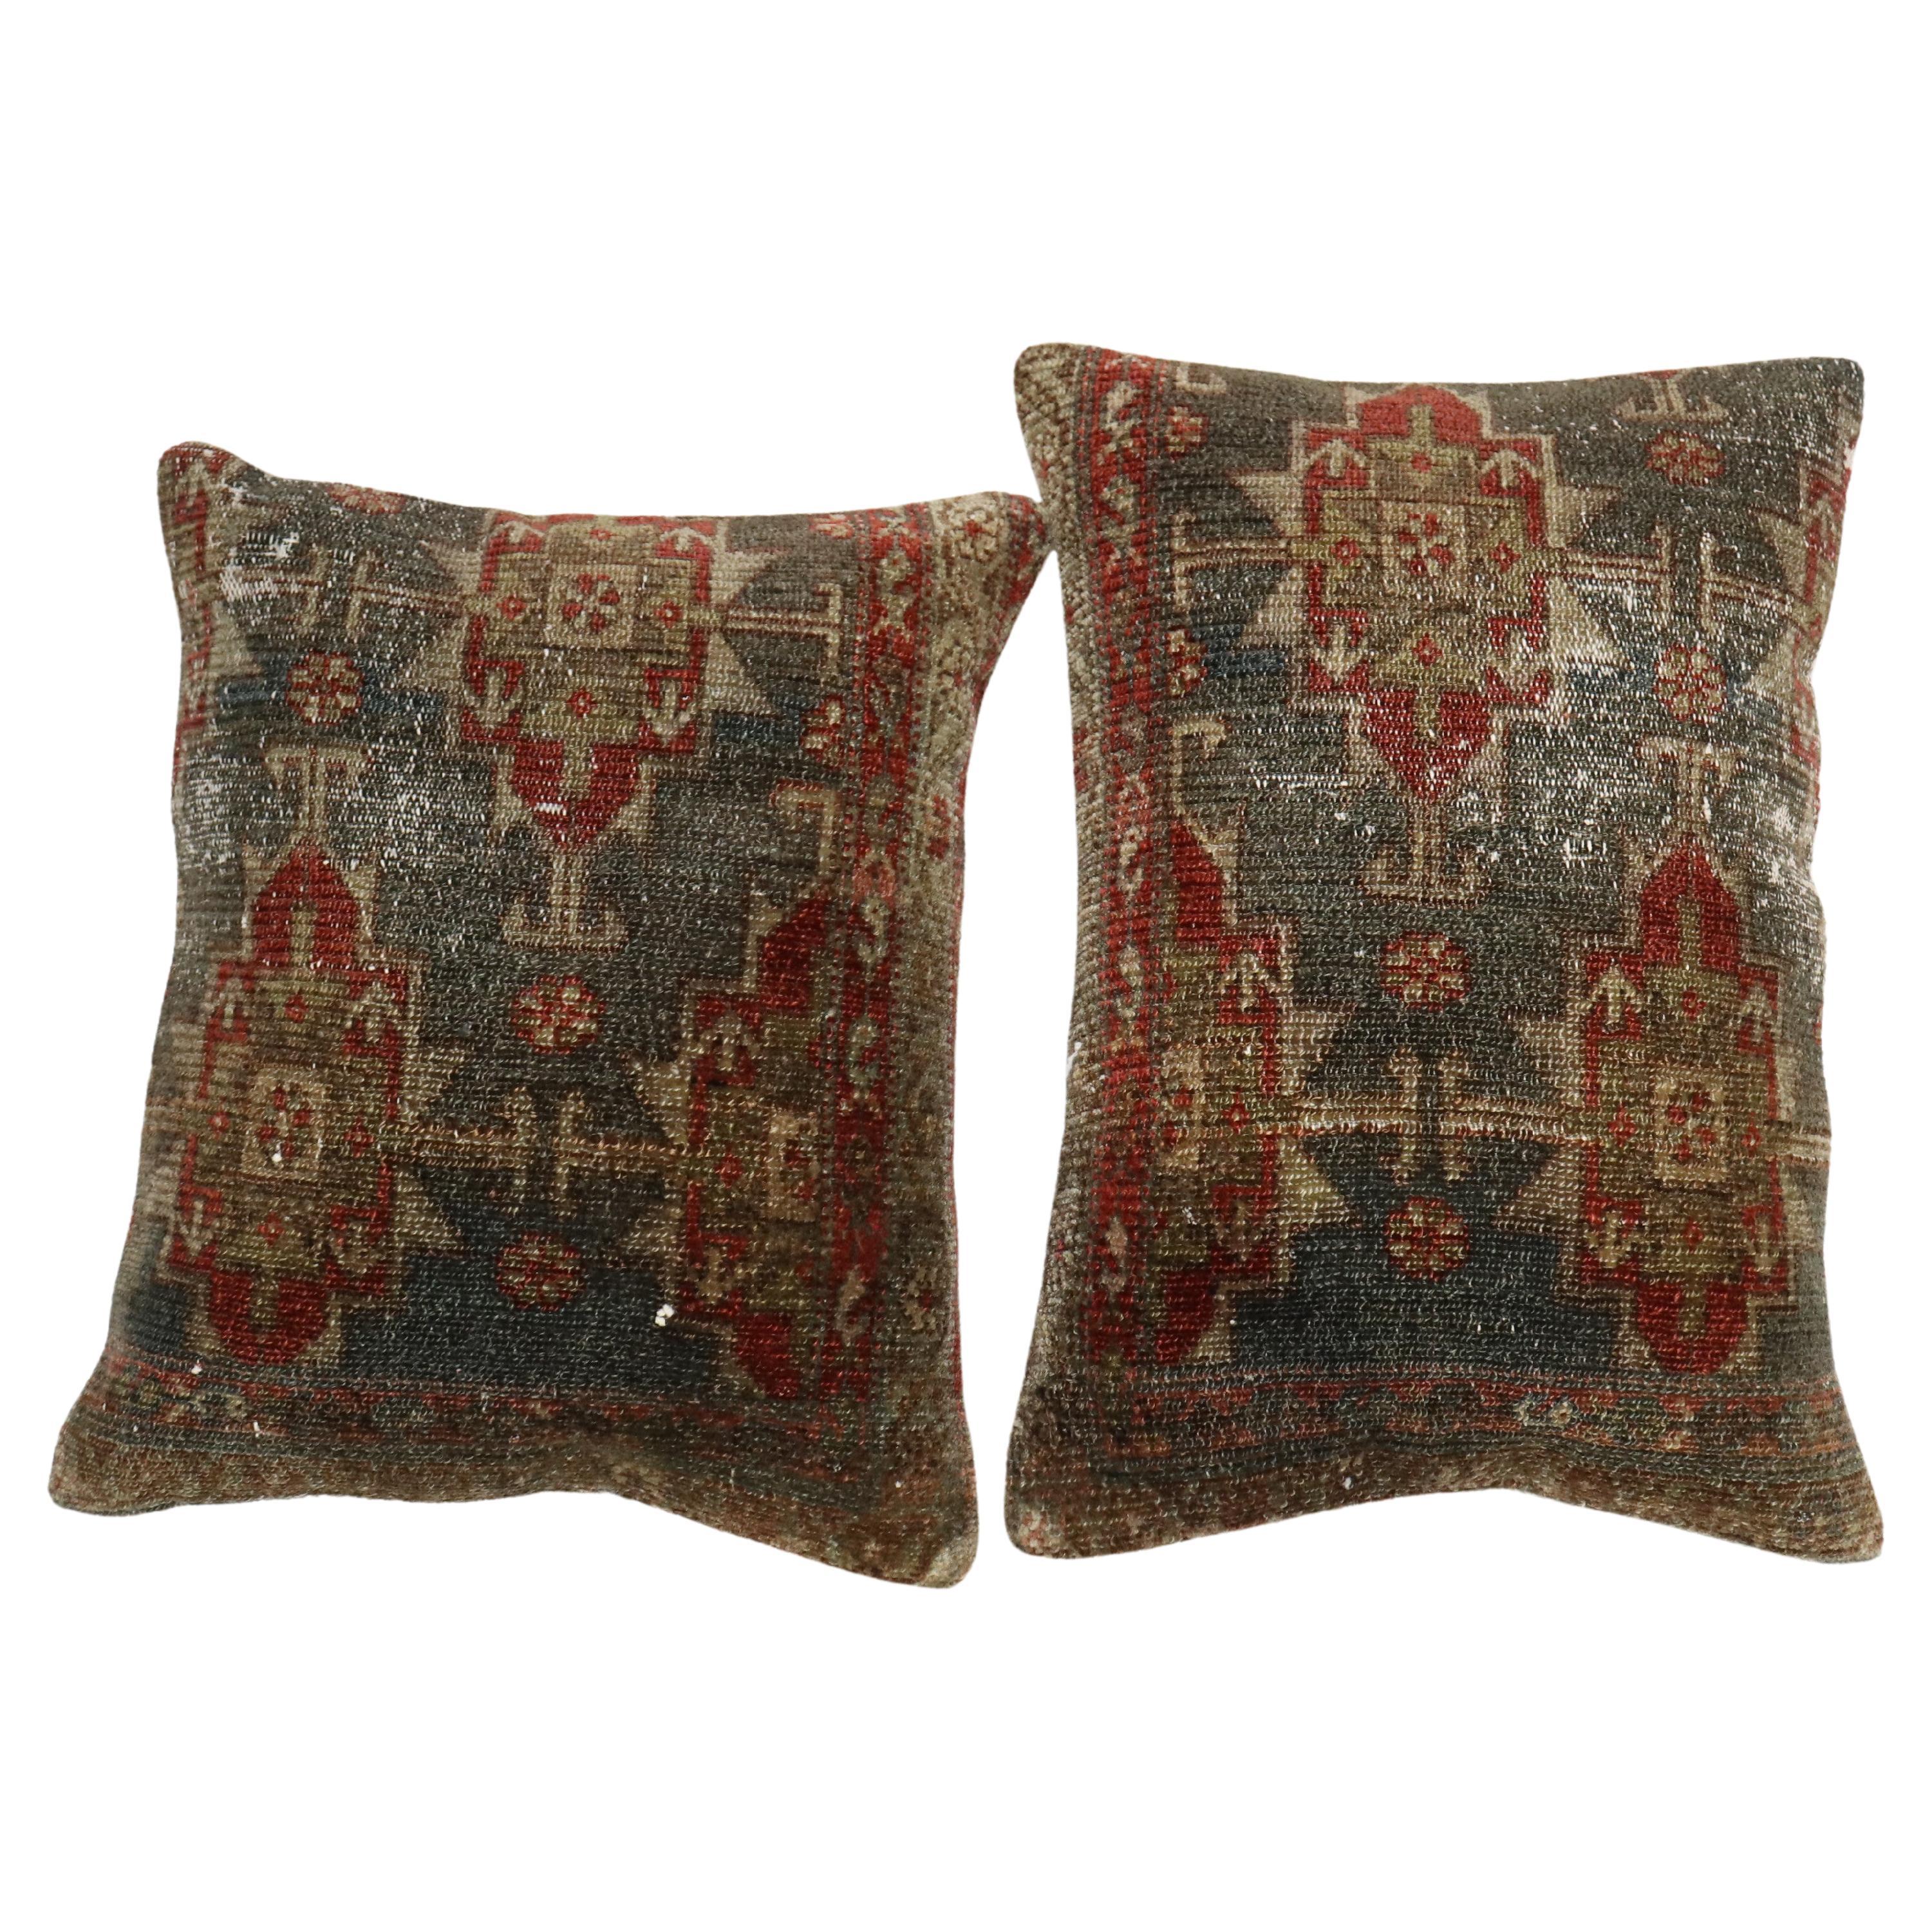 Zabihi Collection Pair of Persian Pillows